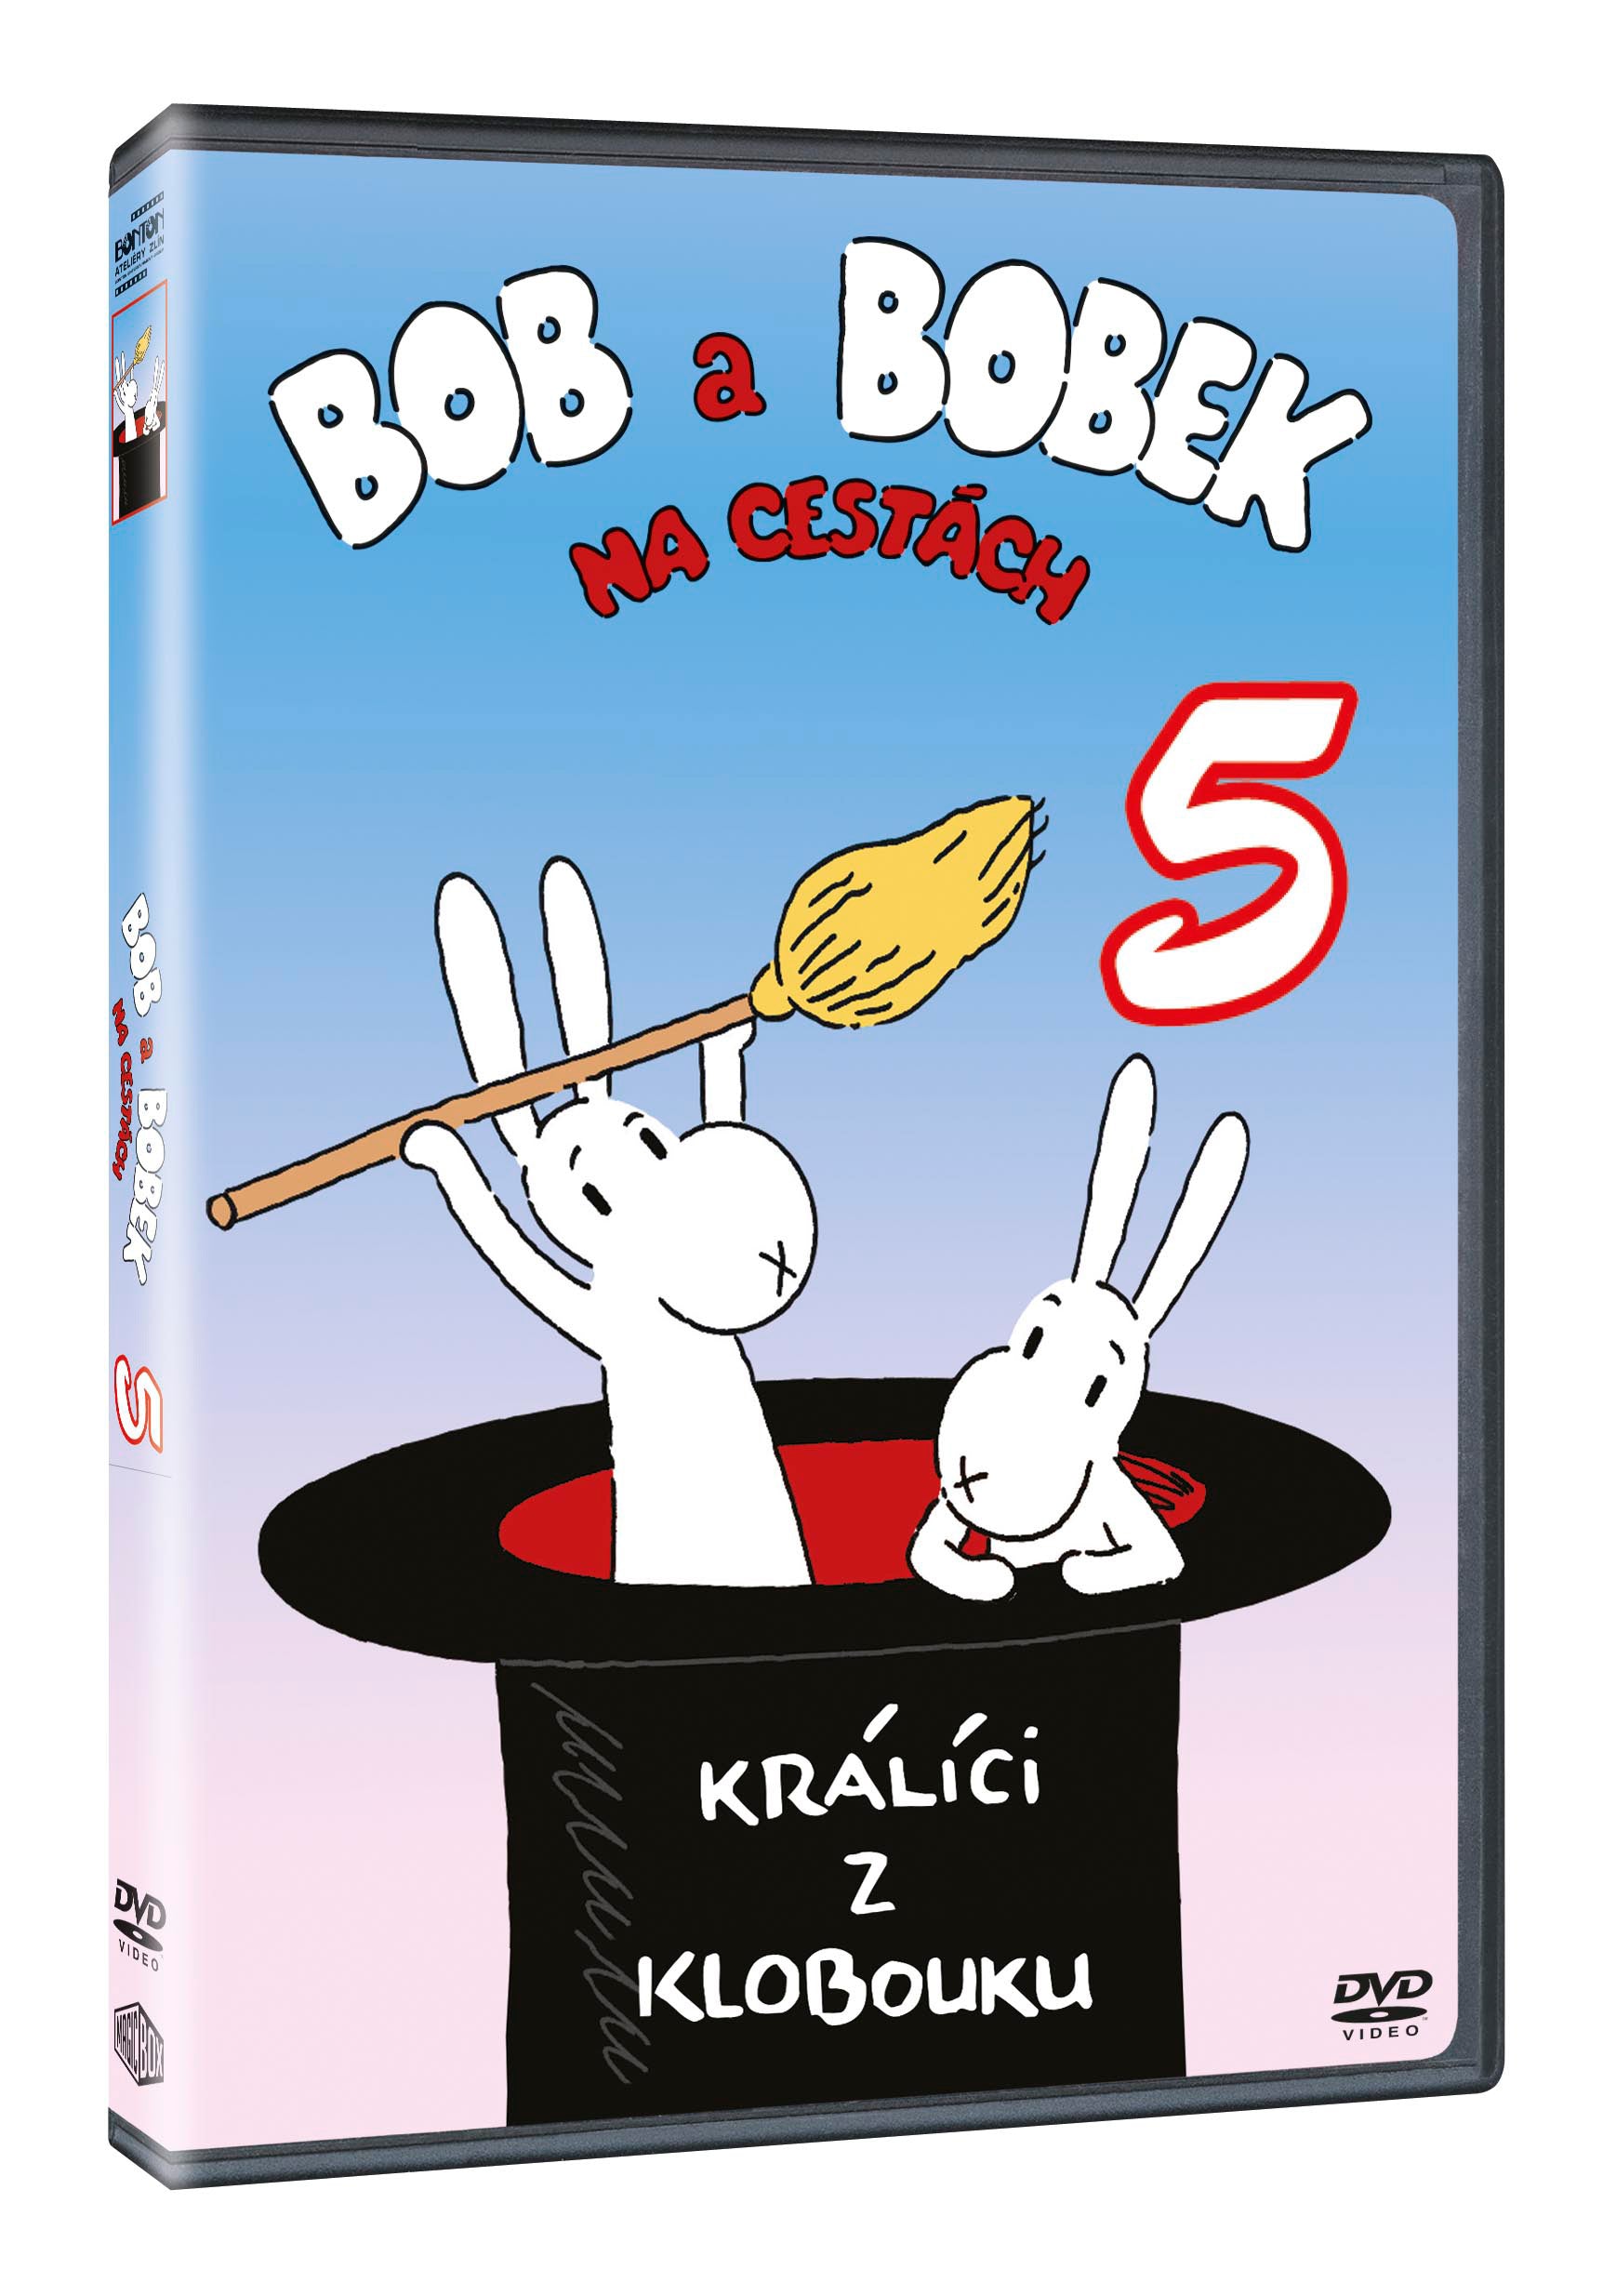 Bob a Bobek na cestach V. DVD